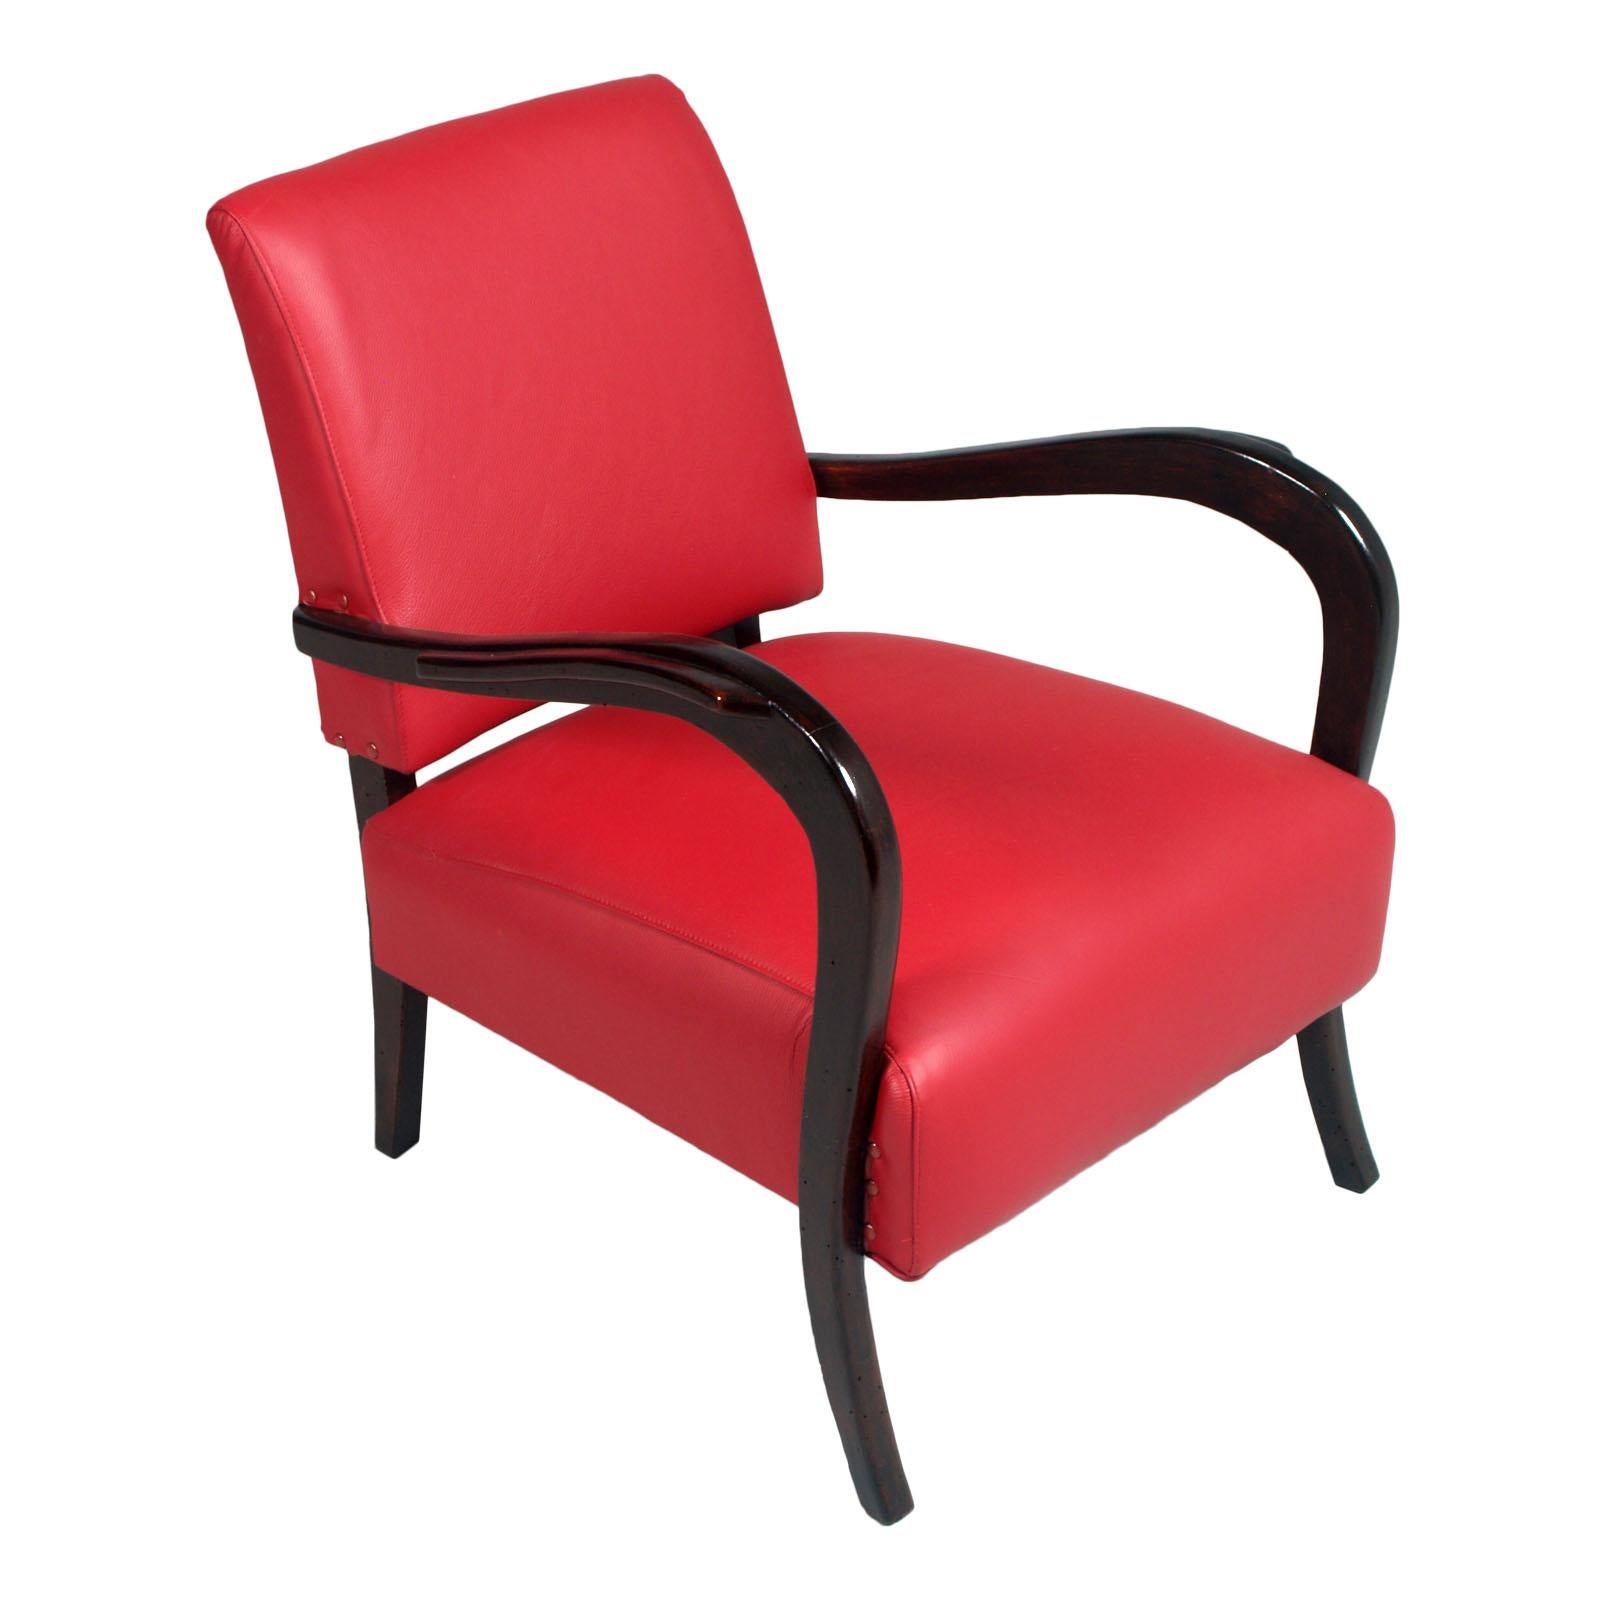 Italienne 1930, belle paire de deux fauteuils Art Déco avec accoudoirs courbes en noyer ébonisé
Les deux fauteuils club ont été entièrement restaurés et retapissés avec un cuir élégant et original de couleur rouge Frau.
Les chaises sont équipées